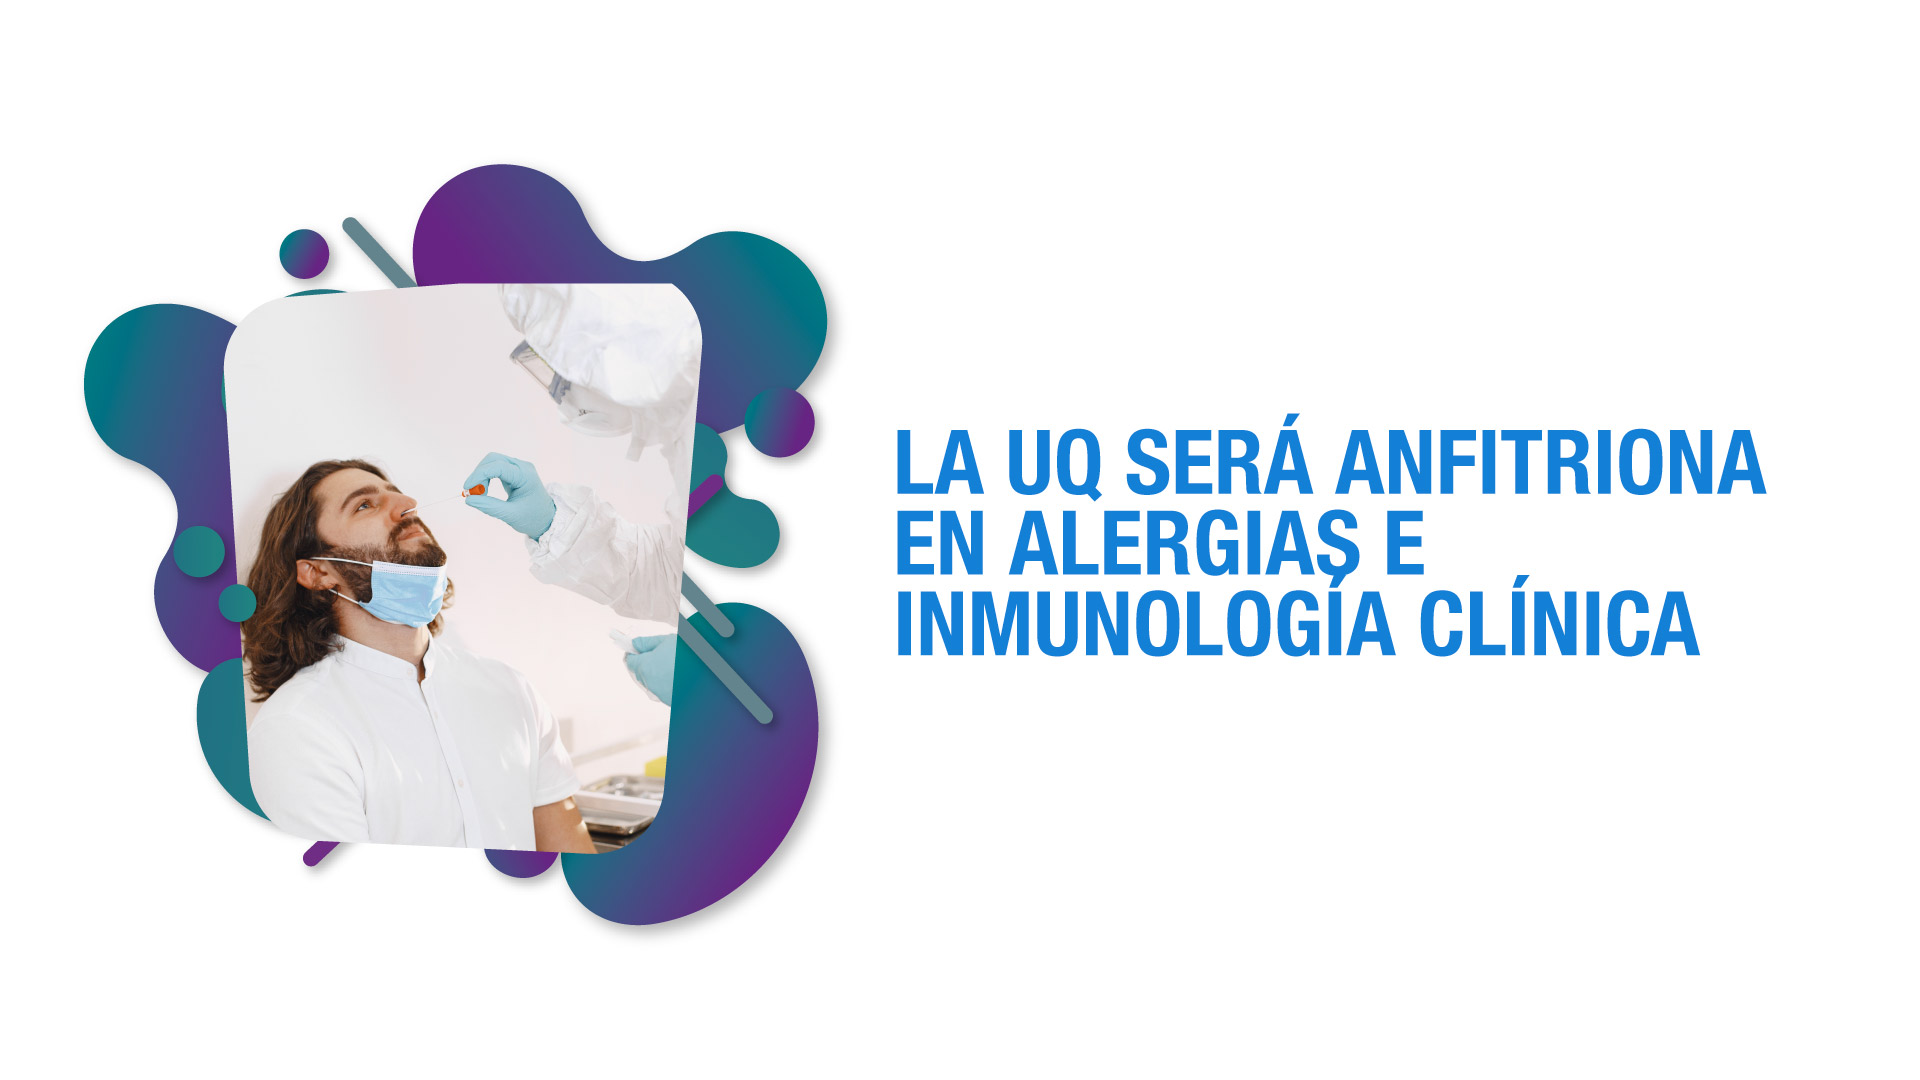 En febrero habrá Jornada académica sobre alergia e inmunología clínica